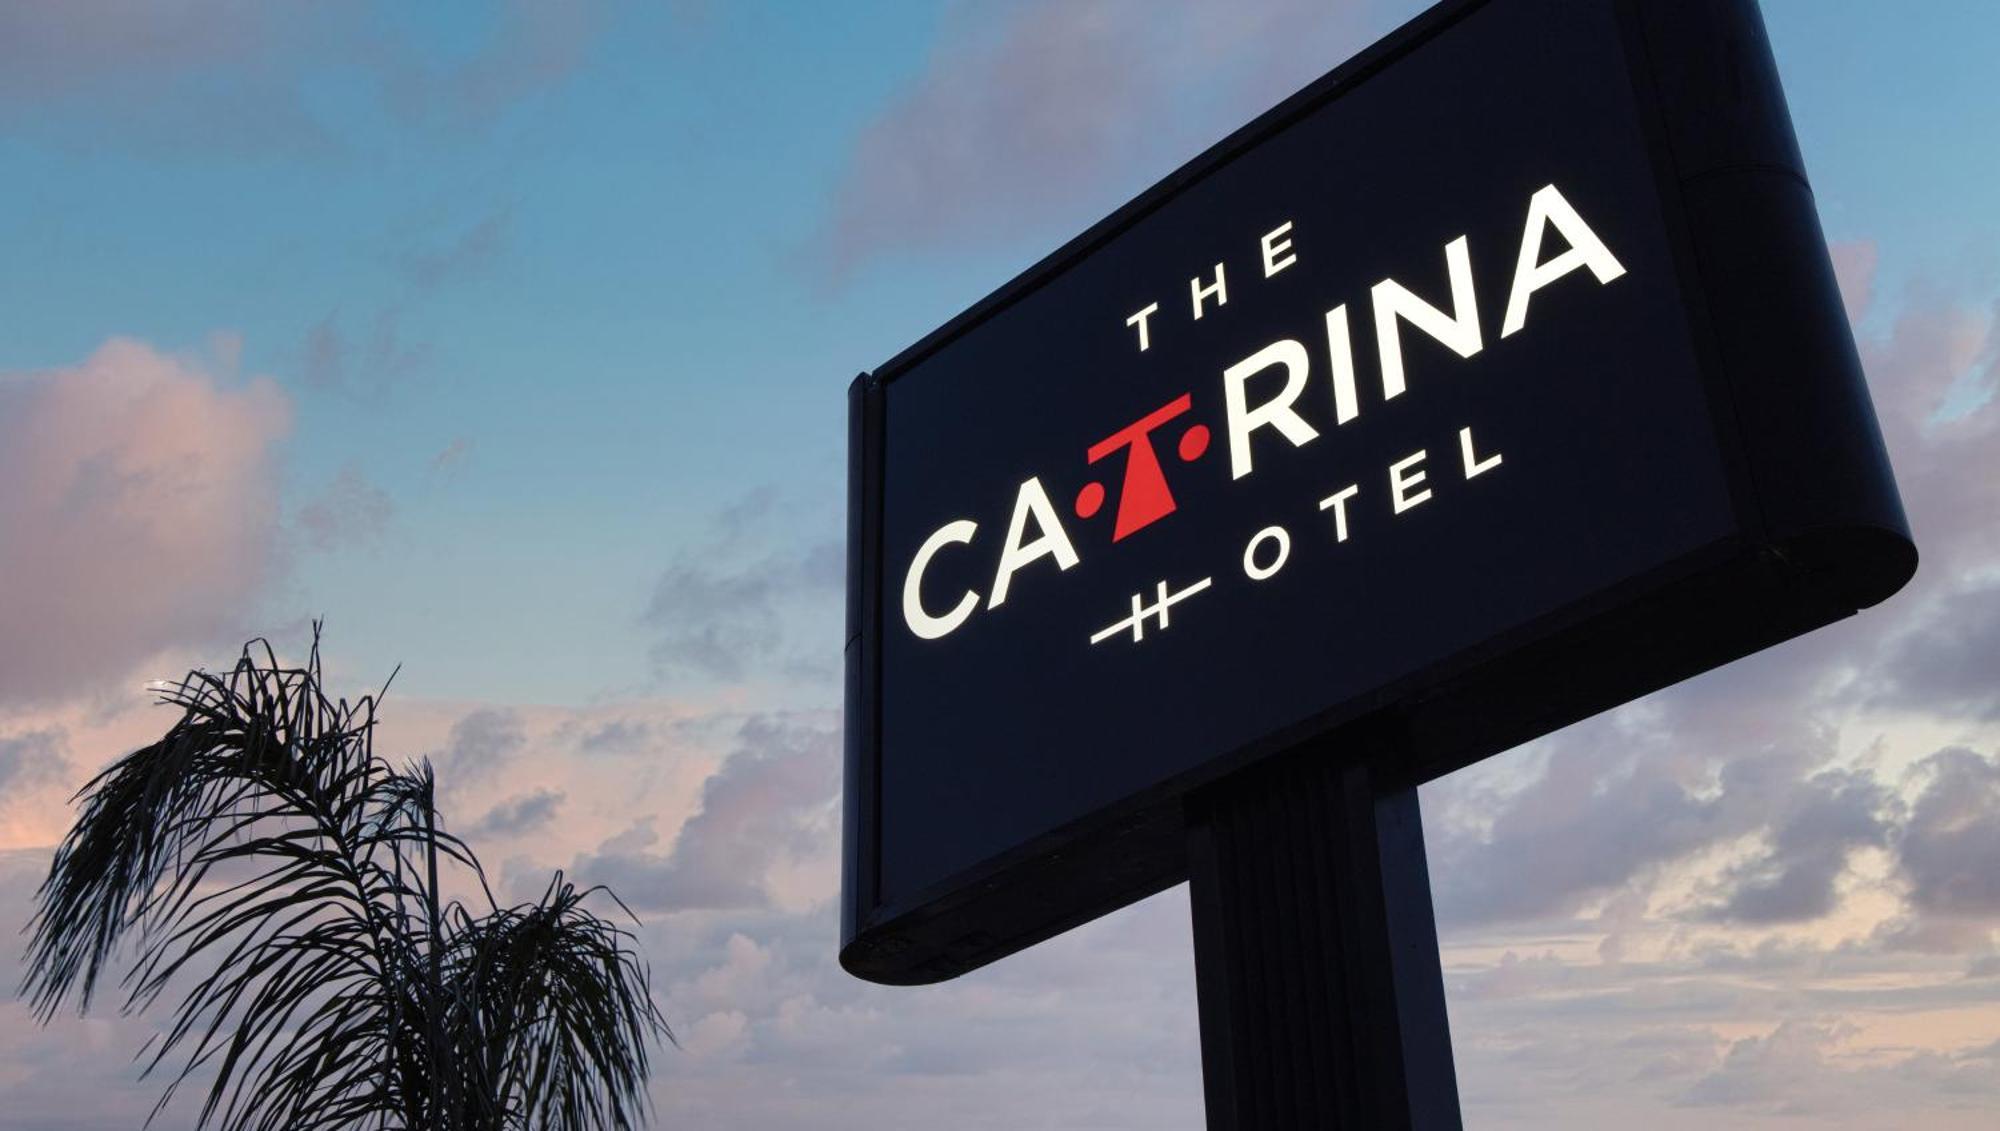 The Catrina Hotel ซานมาเตโอ ภายนอก รูปภาพ